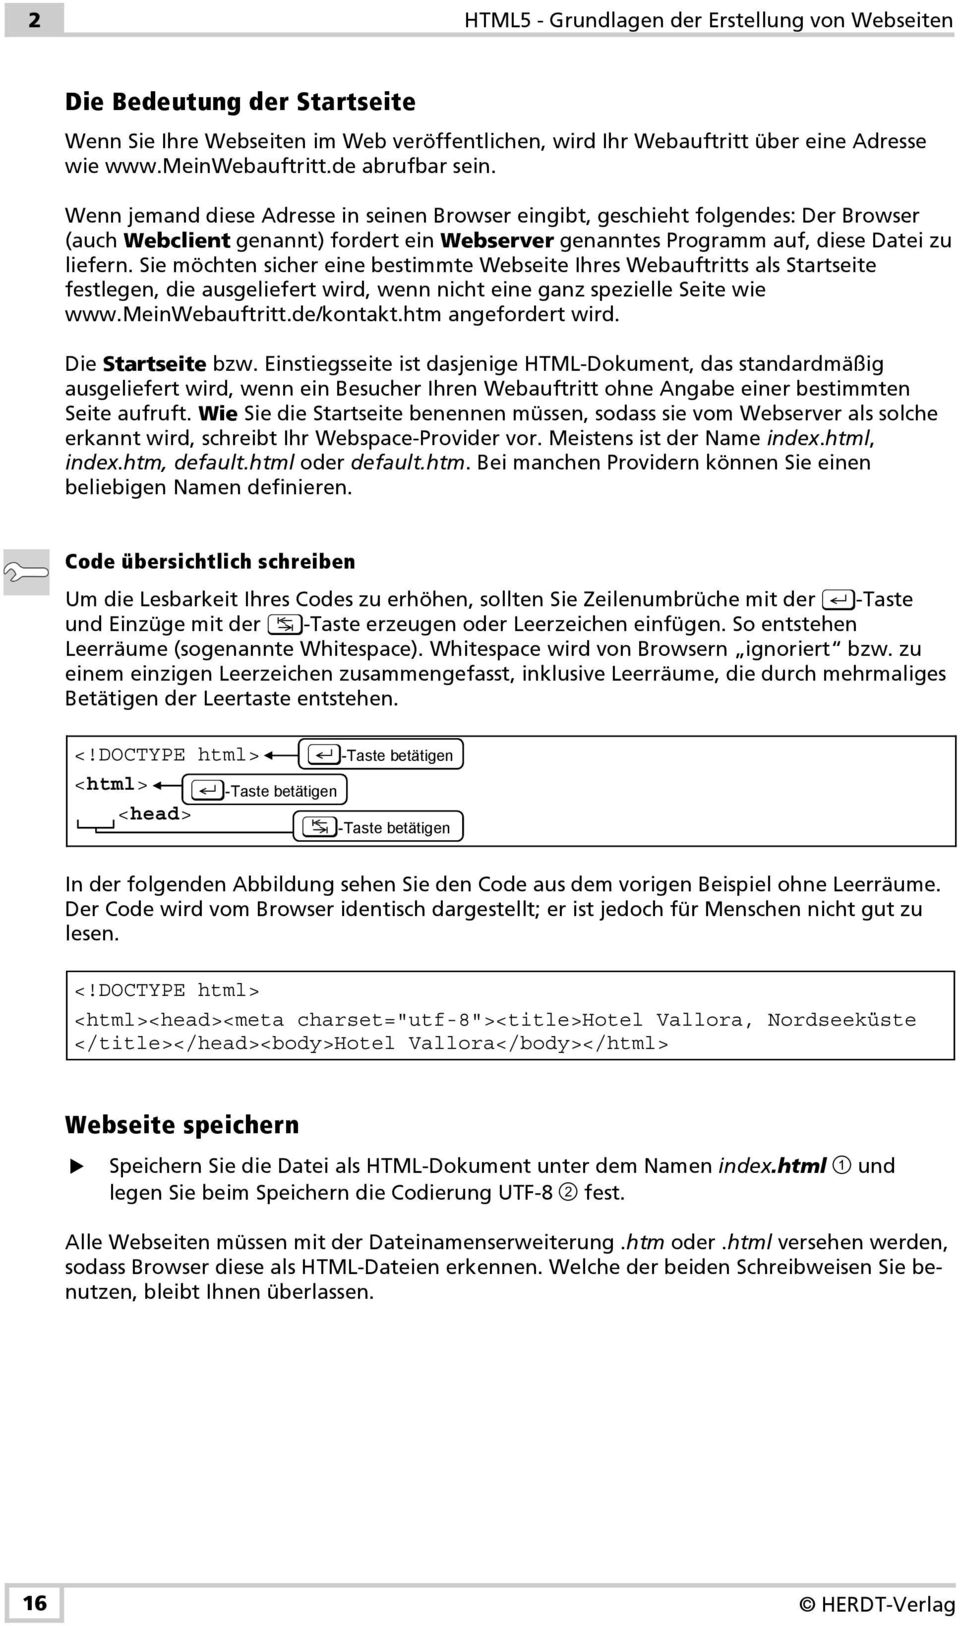 Sie möchten sicher eine bestimmte Webseite Ihres Webauftritts als Startseite festlegen, die ausgeliefert wird, wenn nicht eine ganz spezielle Seite wie www.meinwebauftritt.de/kontakt.